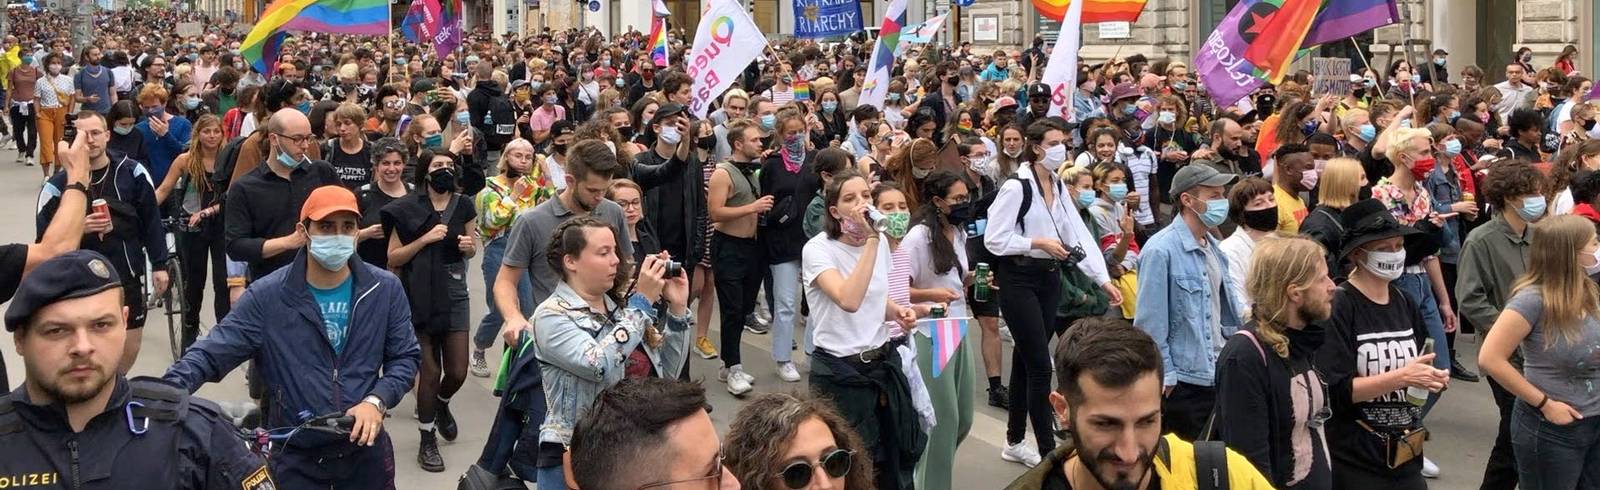 Donnerstagsdemo in Wien: "Pride ist Aufstand"